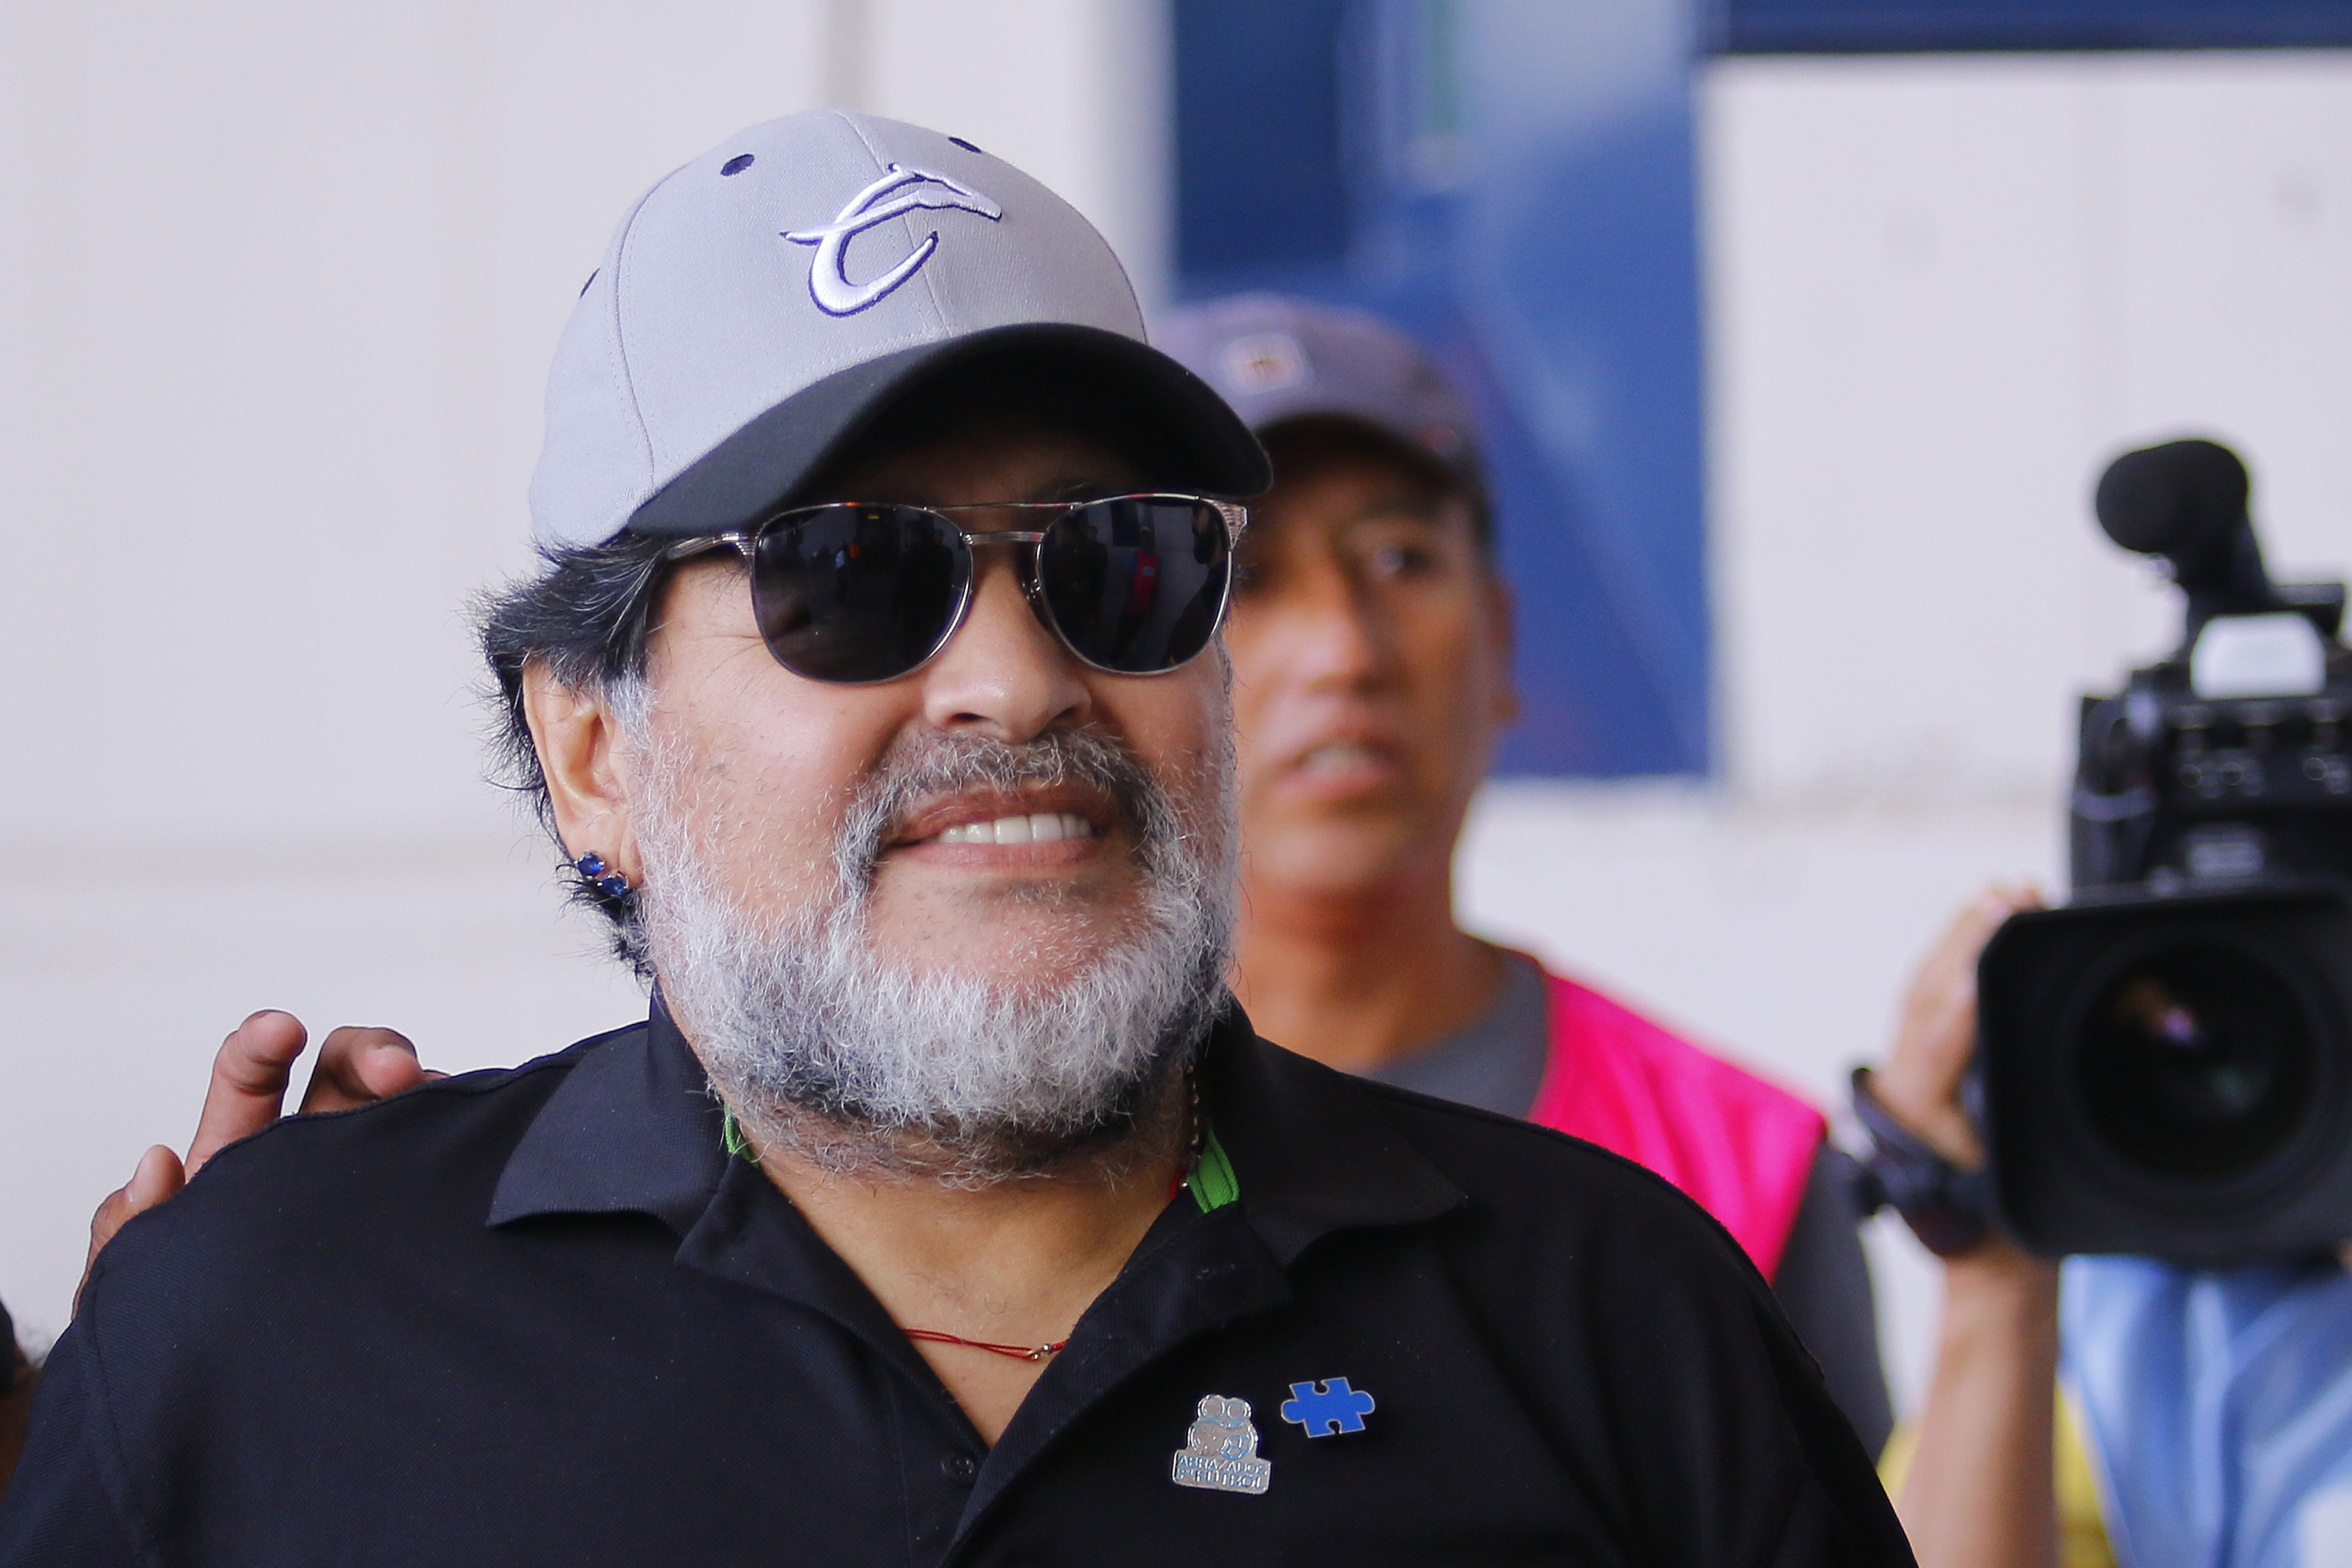 Hoy volví a caminar como cuando tenía 15 años: Maradona